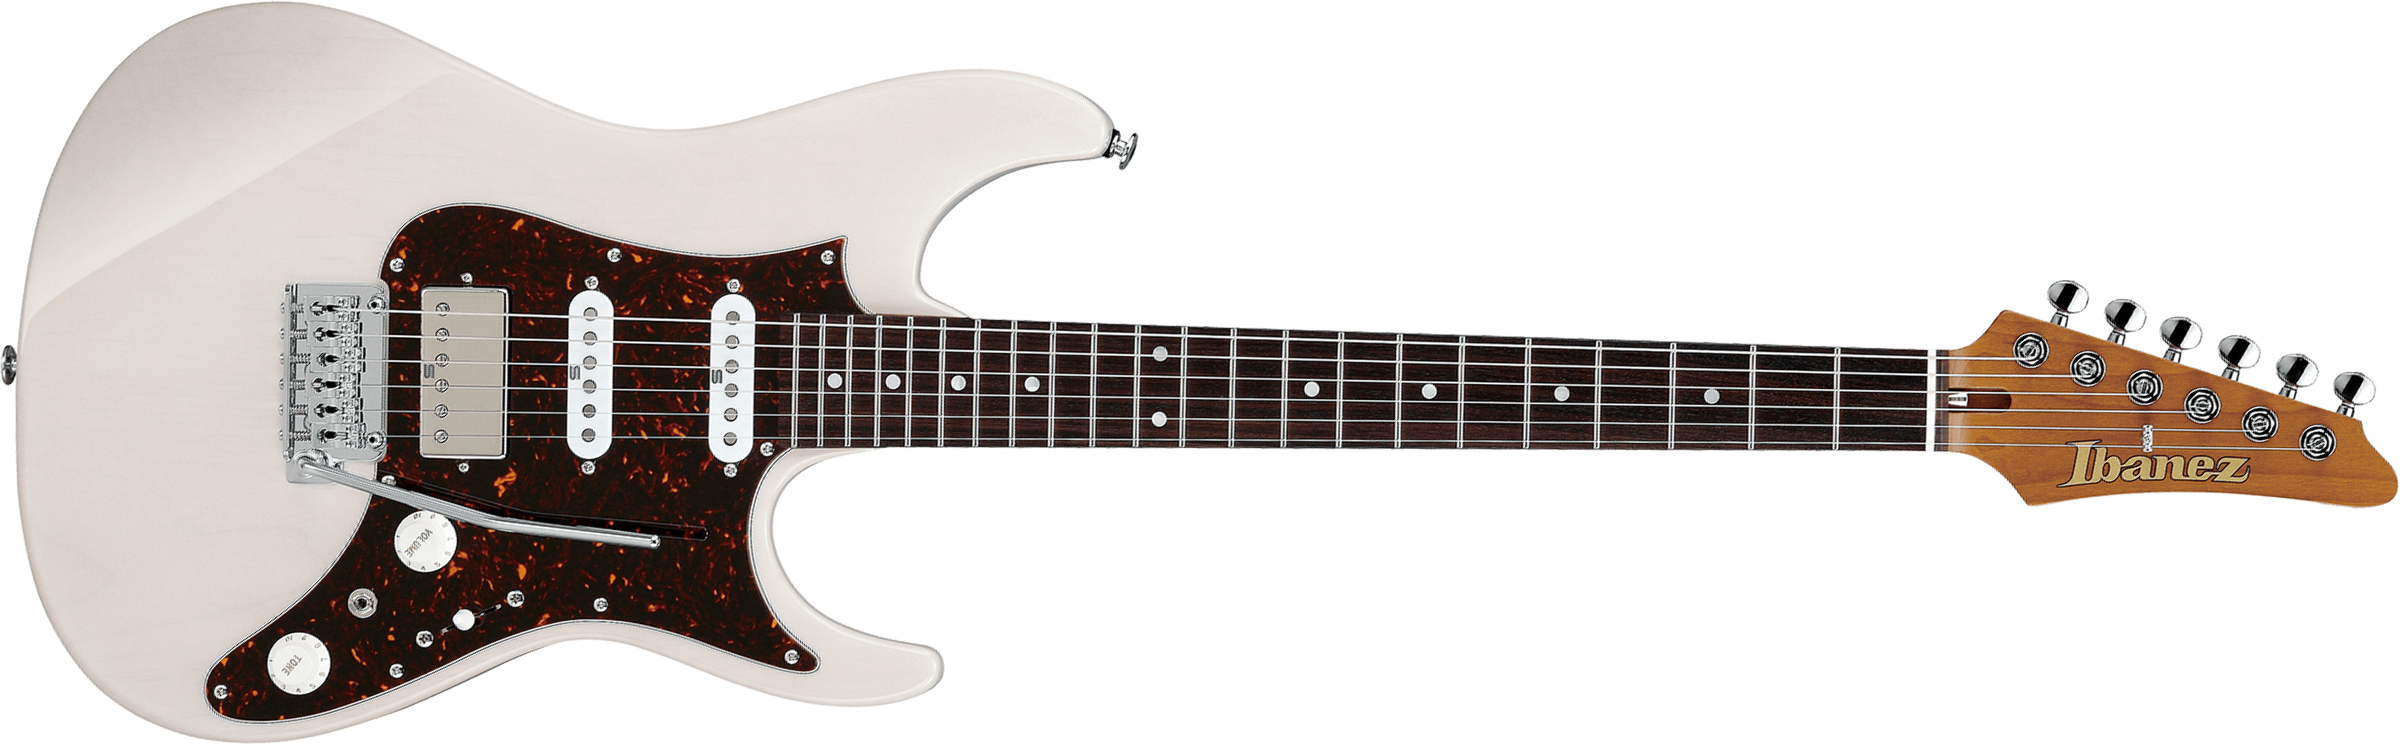 Ibanez Az2204n Awd Prestige Jap Hss Seymour Duncan Trem Rw - Antique White Blonde - Guitare Électrique Forme Str - Main picture